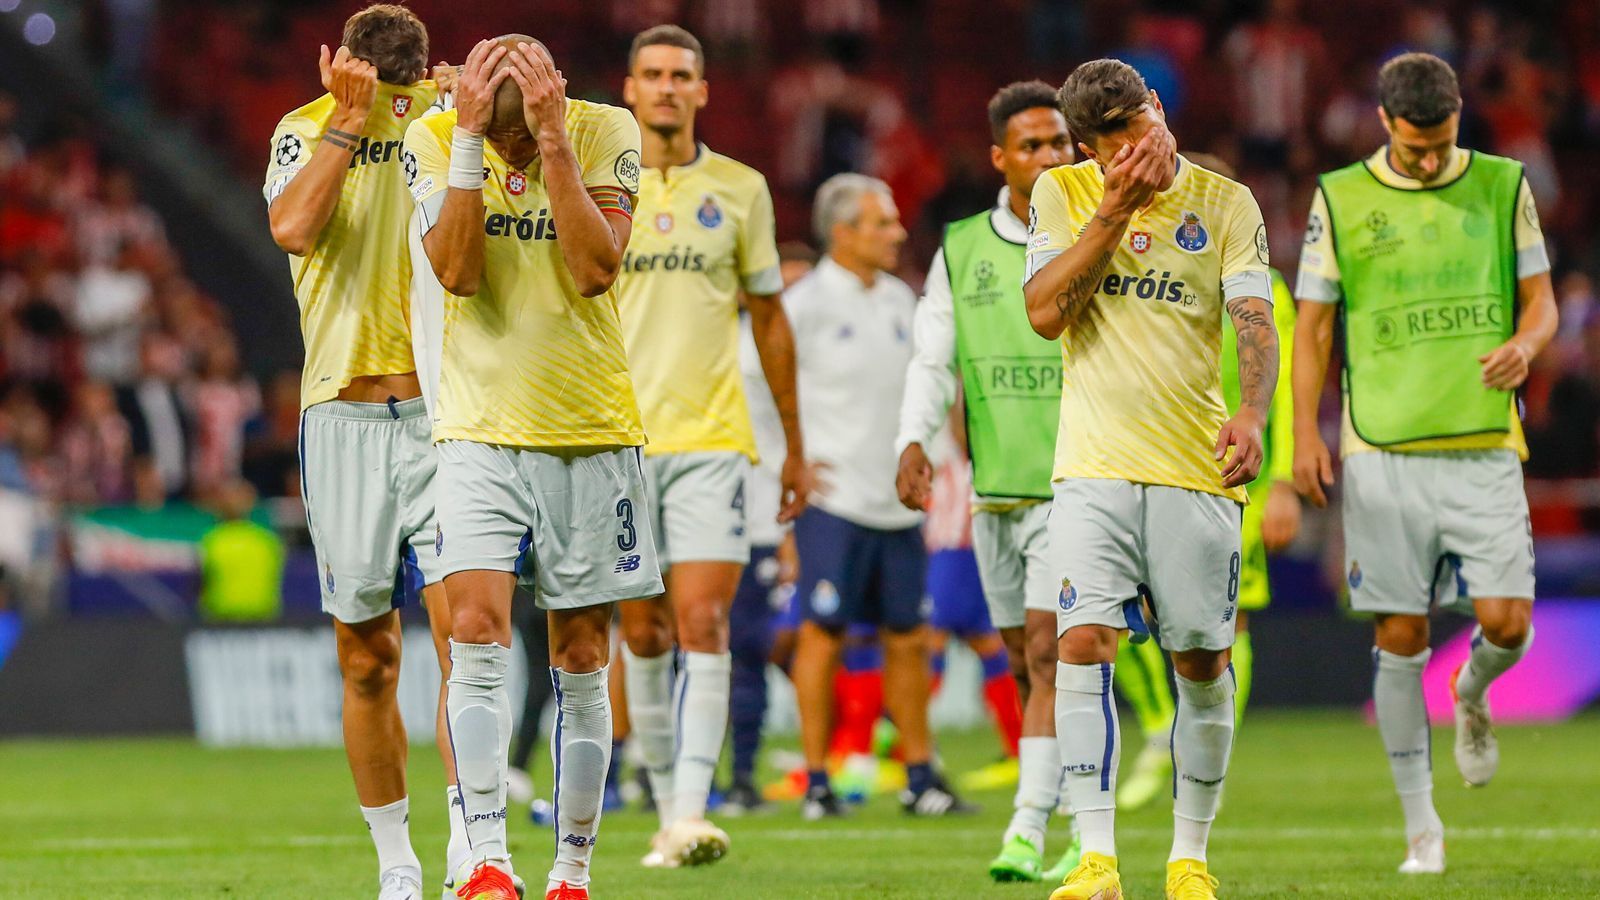 
                <strong>Enttäuschung bei Porto</strong><br>
                Des Einen Freud ist des Anderen Leid. Portos Spielern ist die Enttäuschung nach der hochdramatischen Nachspielzeit ins Gesicht geschrieben. Manche Spieler müssen sogar Tränen vergießen, dabei ist es doch am Ende "nur" das Auftakt-Spiel der Champions-League-Gruppenphase, zwar reich an Drama, aber eben auch nur ein Spiel von sechsen.
              